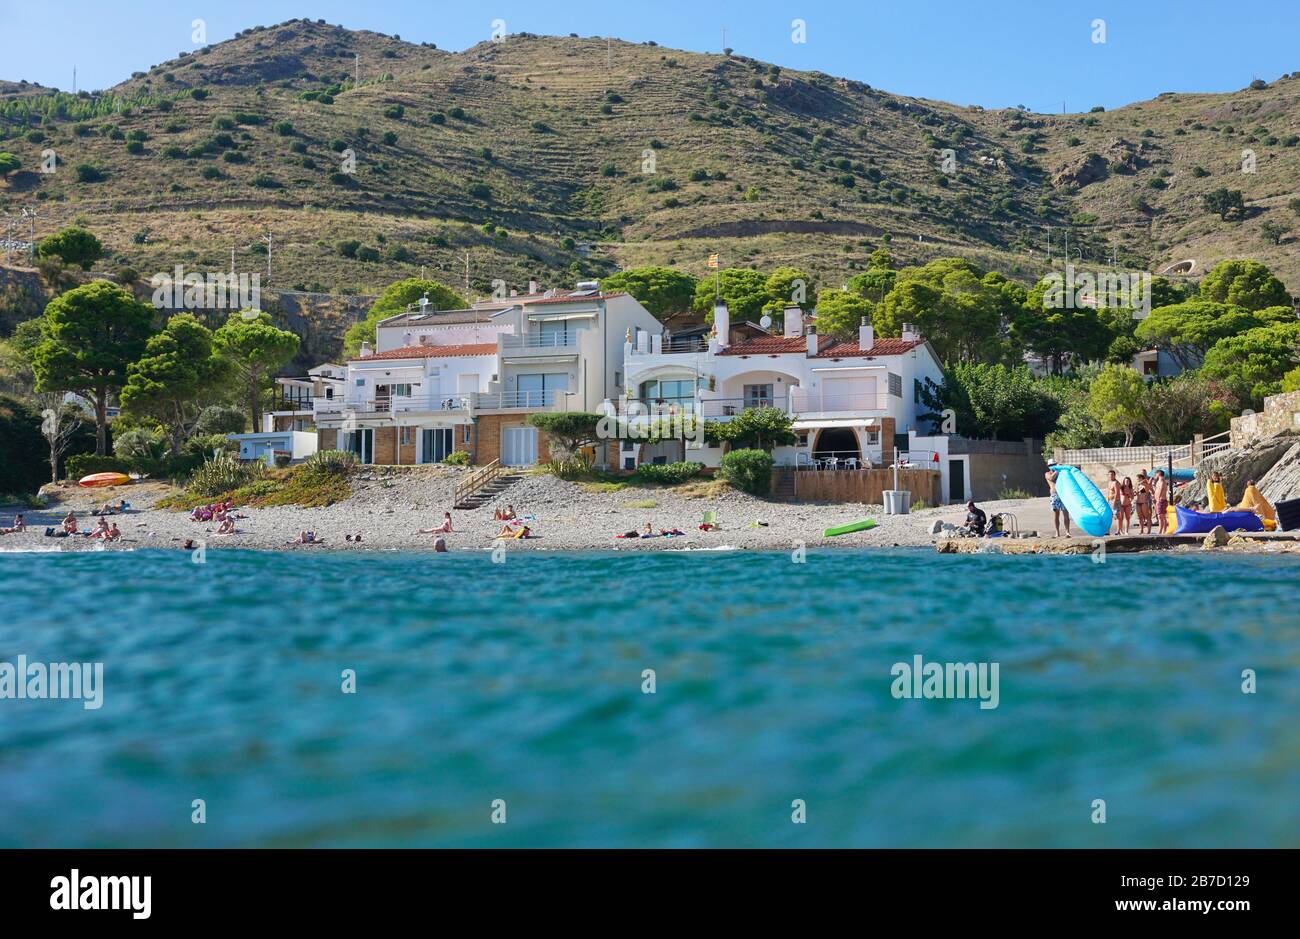 COLERA, CATALUÑA, ESPAÑA – 08/21/2019: Vacaciones de verano en el mar Mediterráneo, costa costera con edificios vistos desde la superficie del agua, Costa Brava Foto de stock